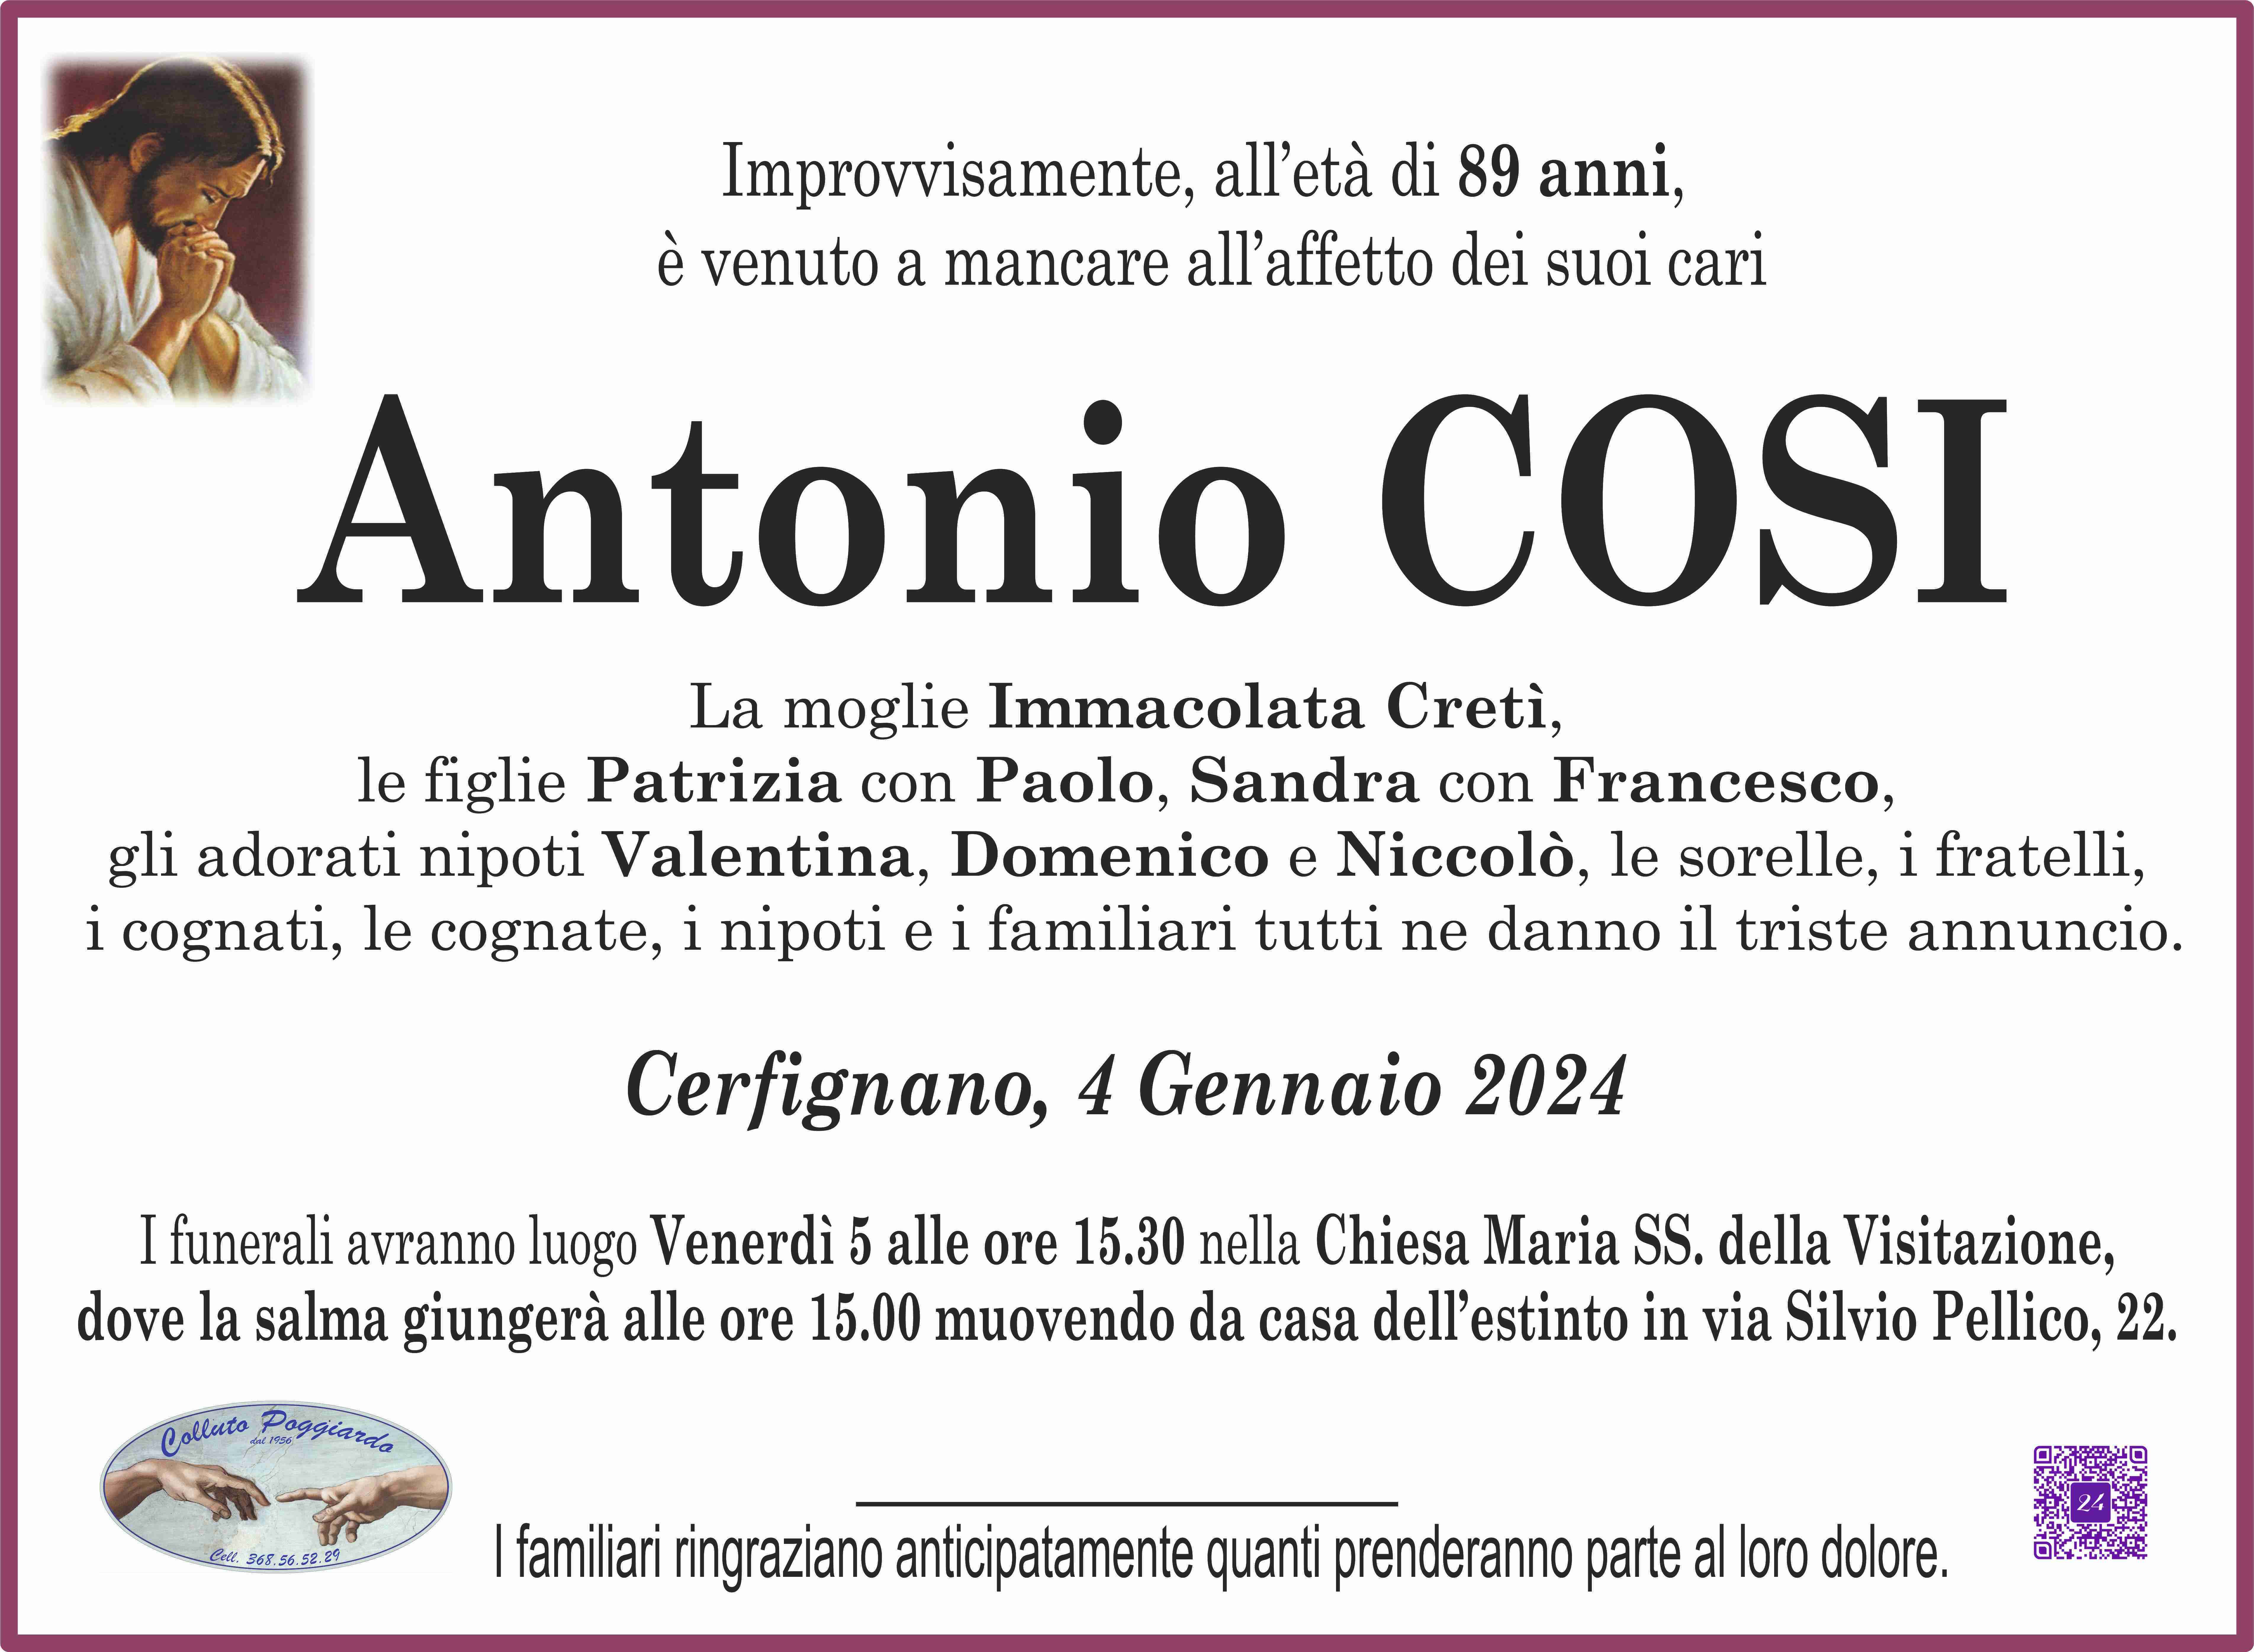 Antonio Cosi